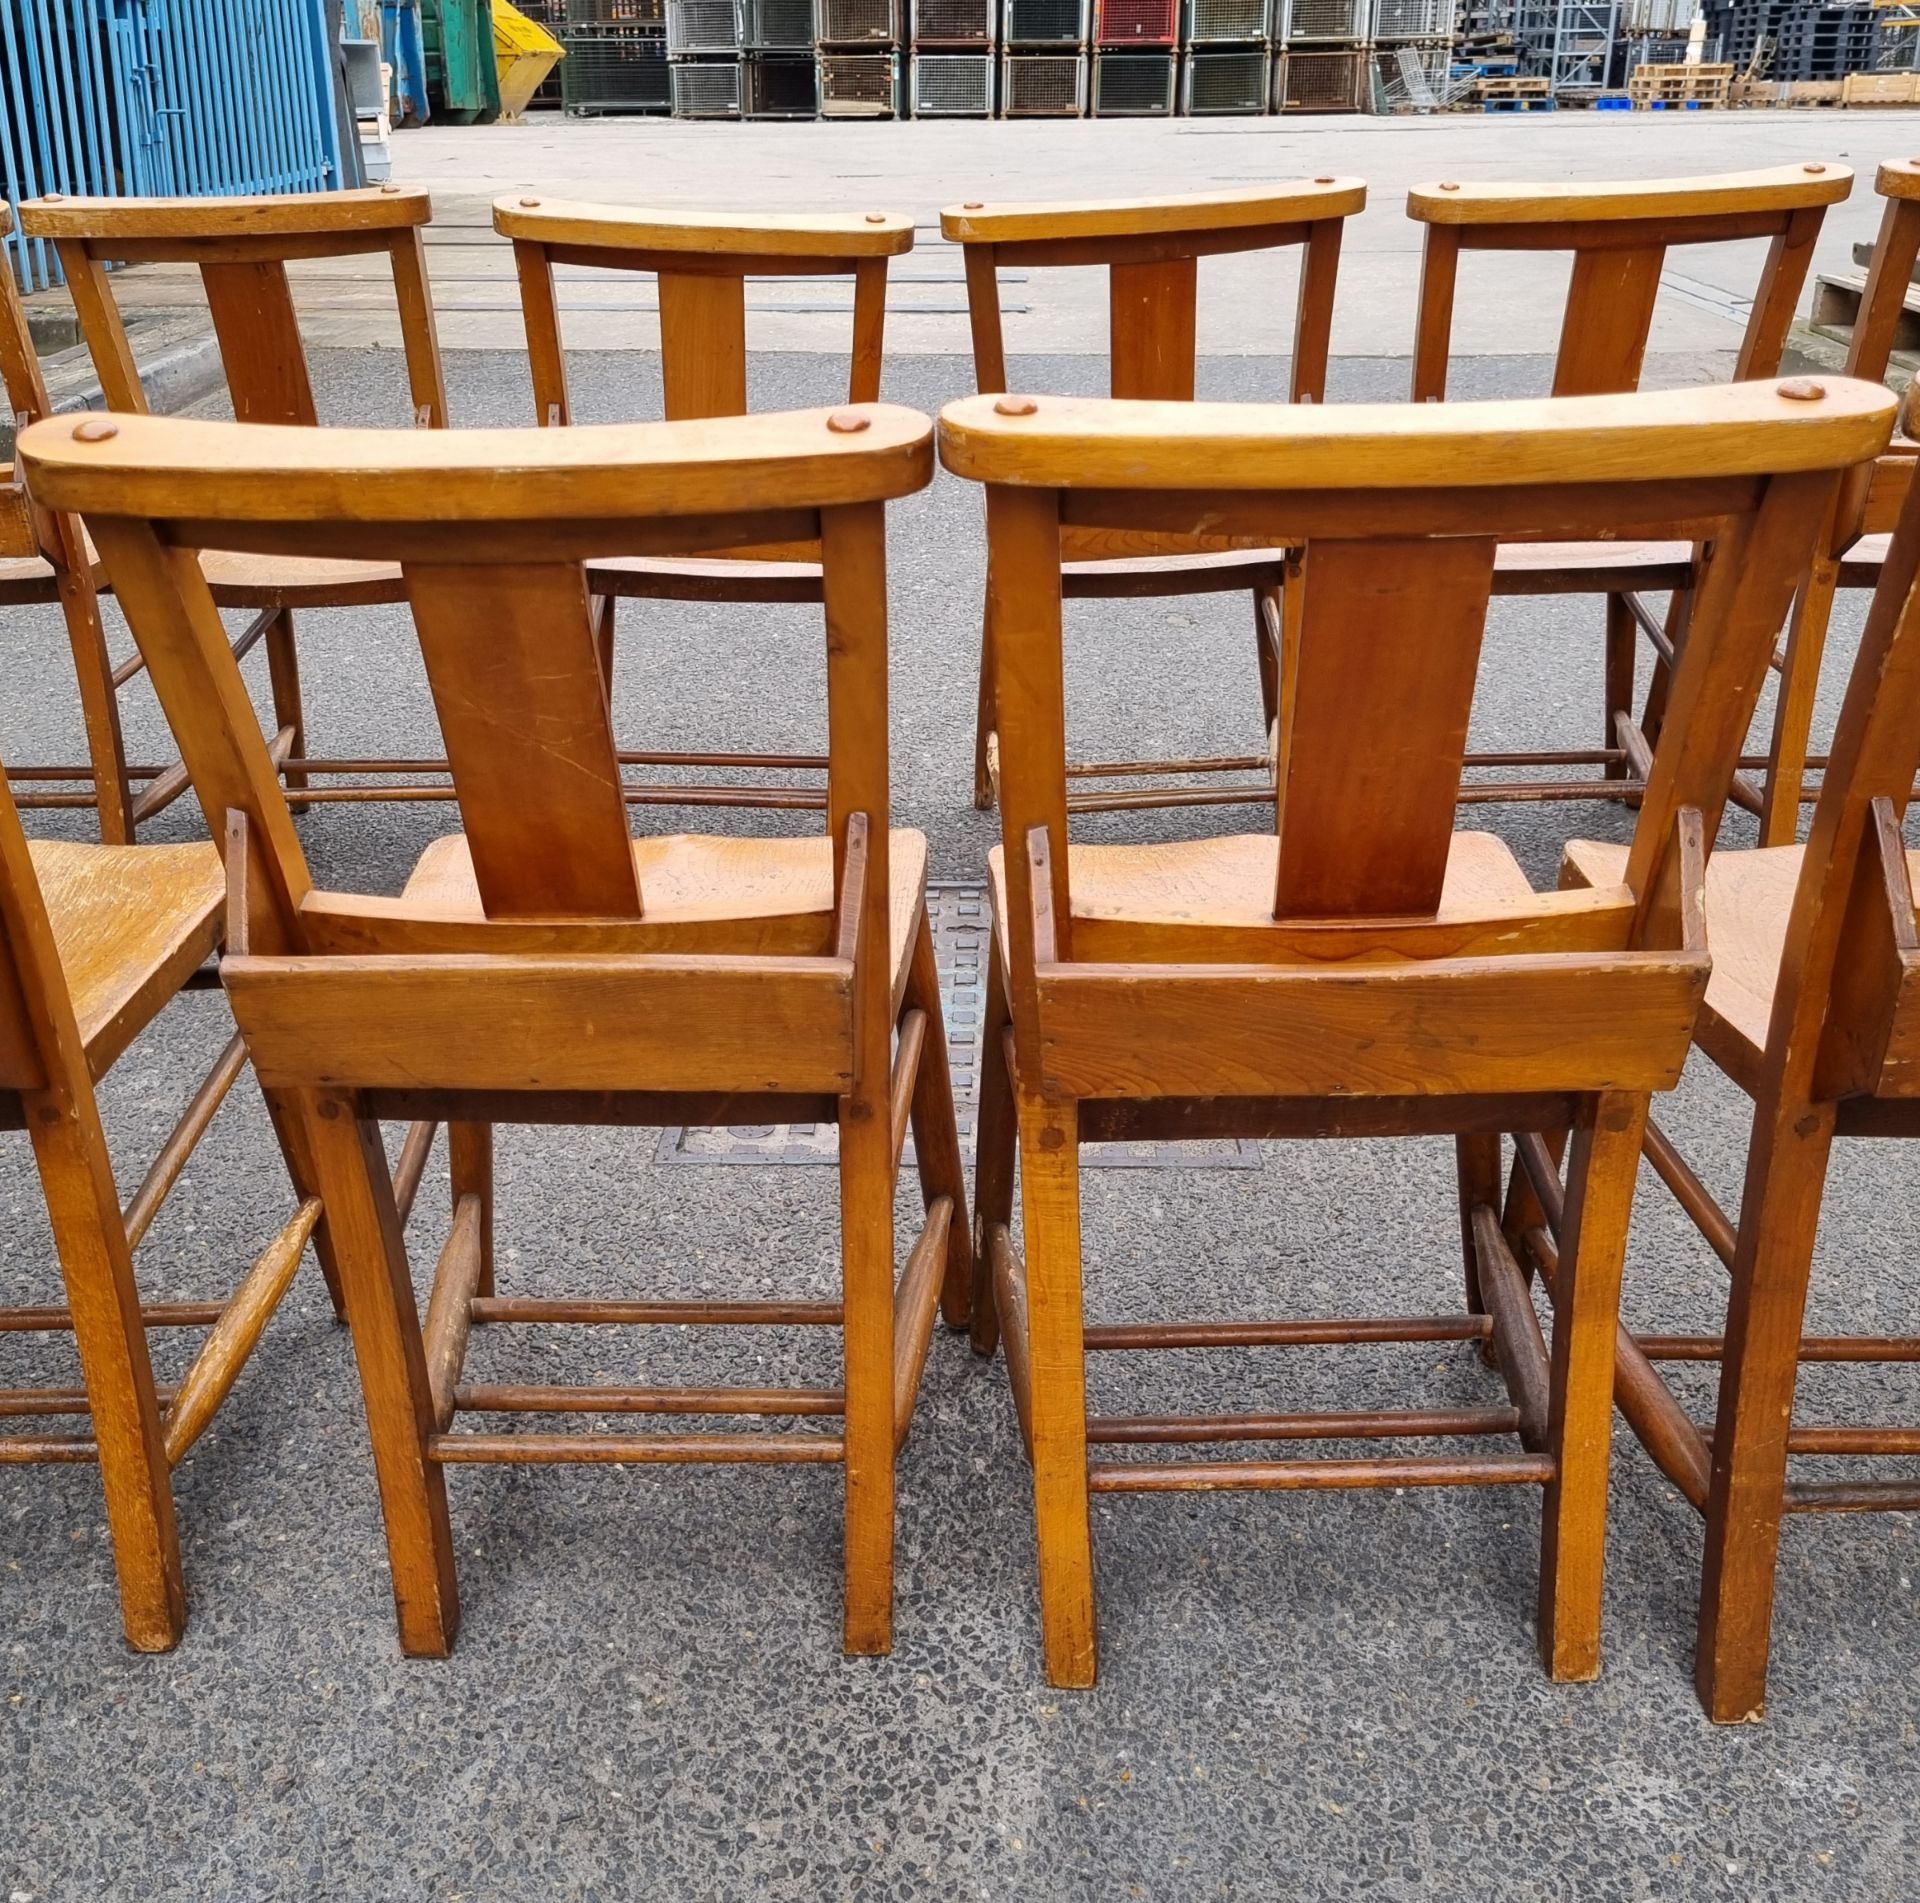 12x Wooden chairs with rear book holder - L 420 x W 420 x H 820mm - Bild 5 aus 10